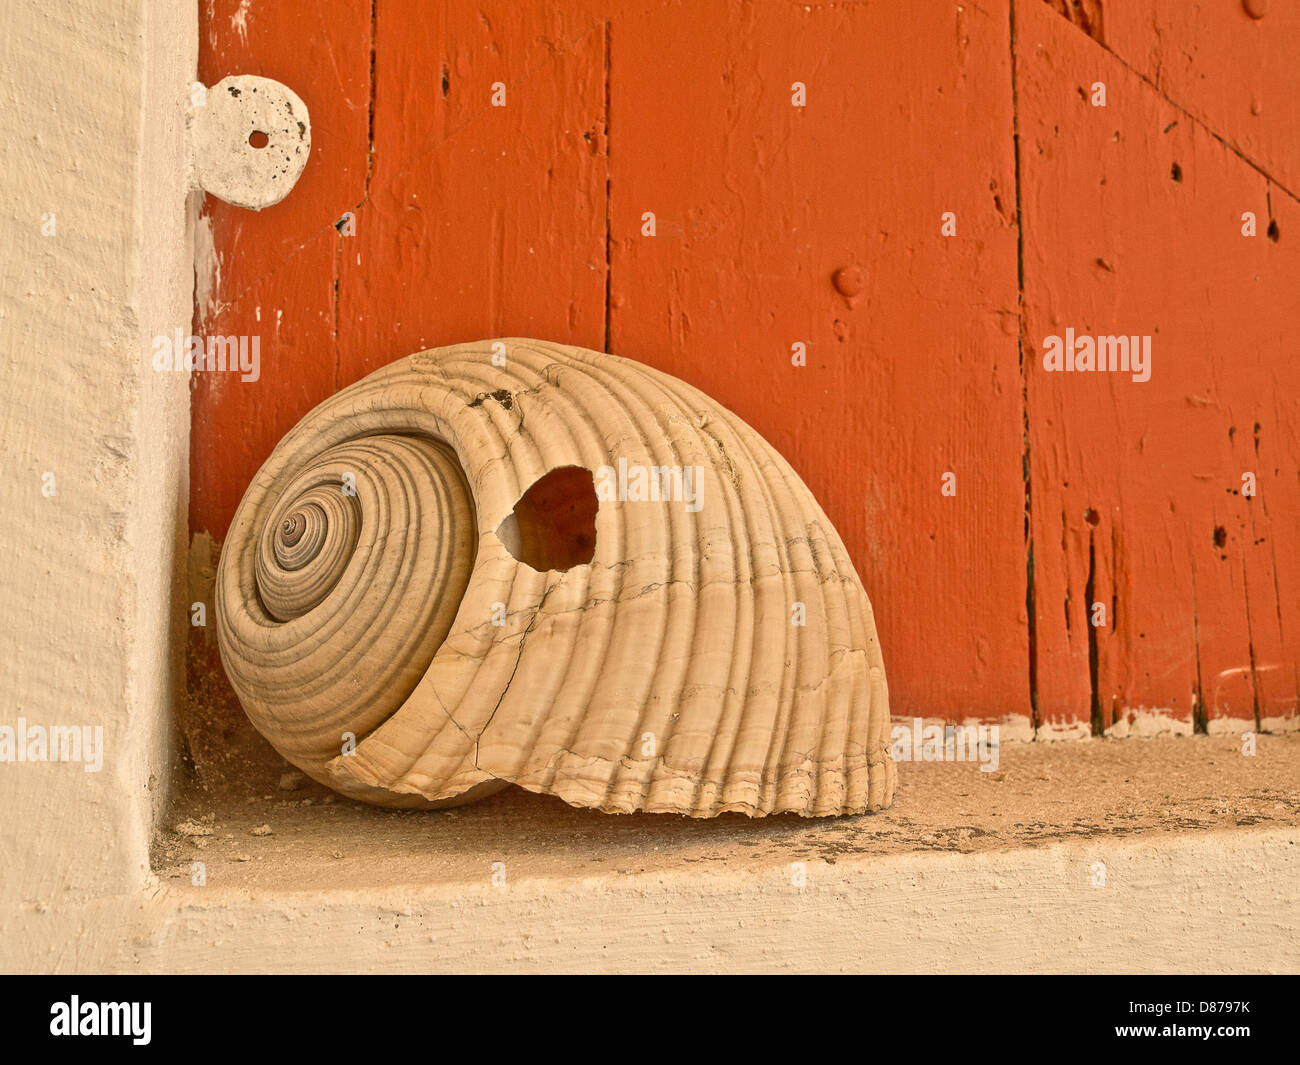 Riesige Meeresschnecke Shell, Shell vom großen Meer Molluske in Eingangstür des griechischen Haus Stockfoto